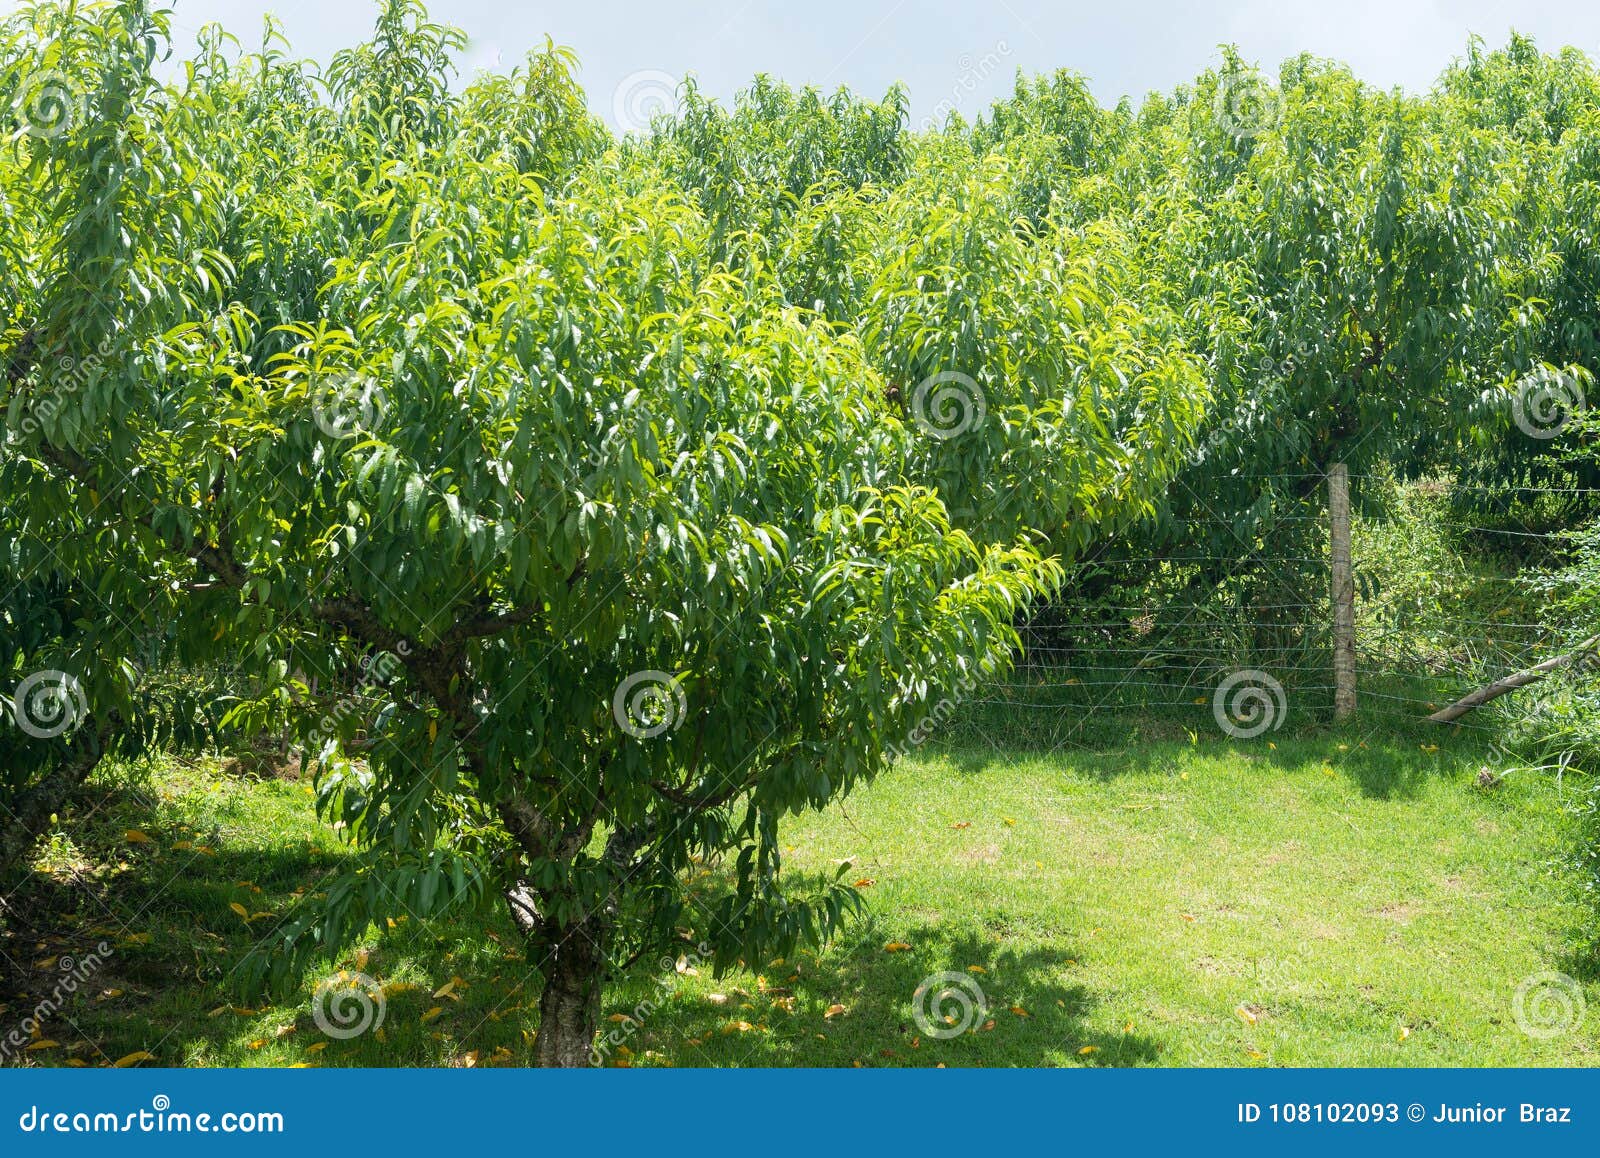 Broskyňový strom neprodukujúci ovocie